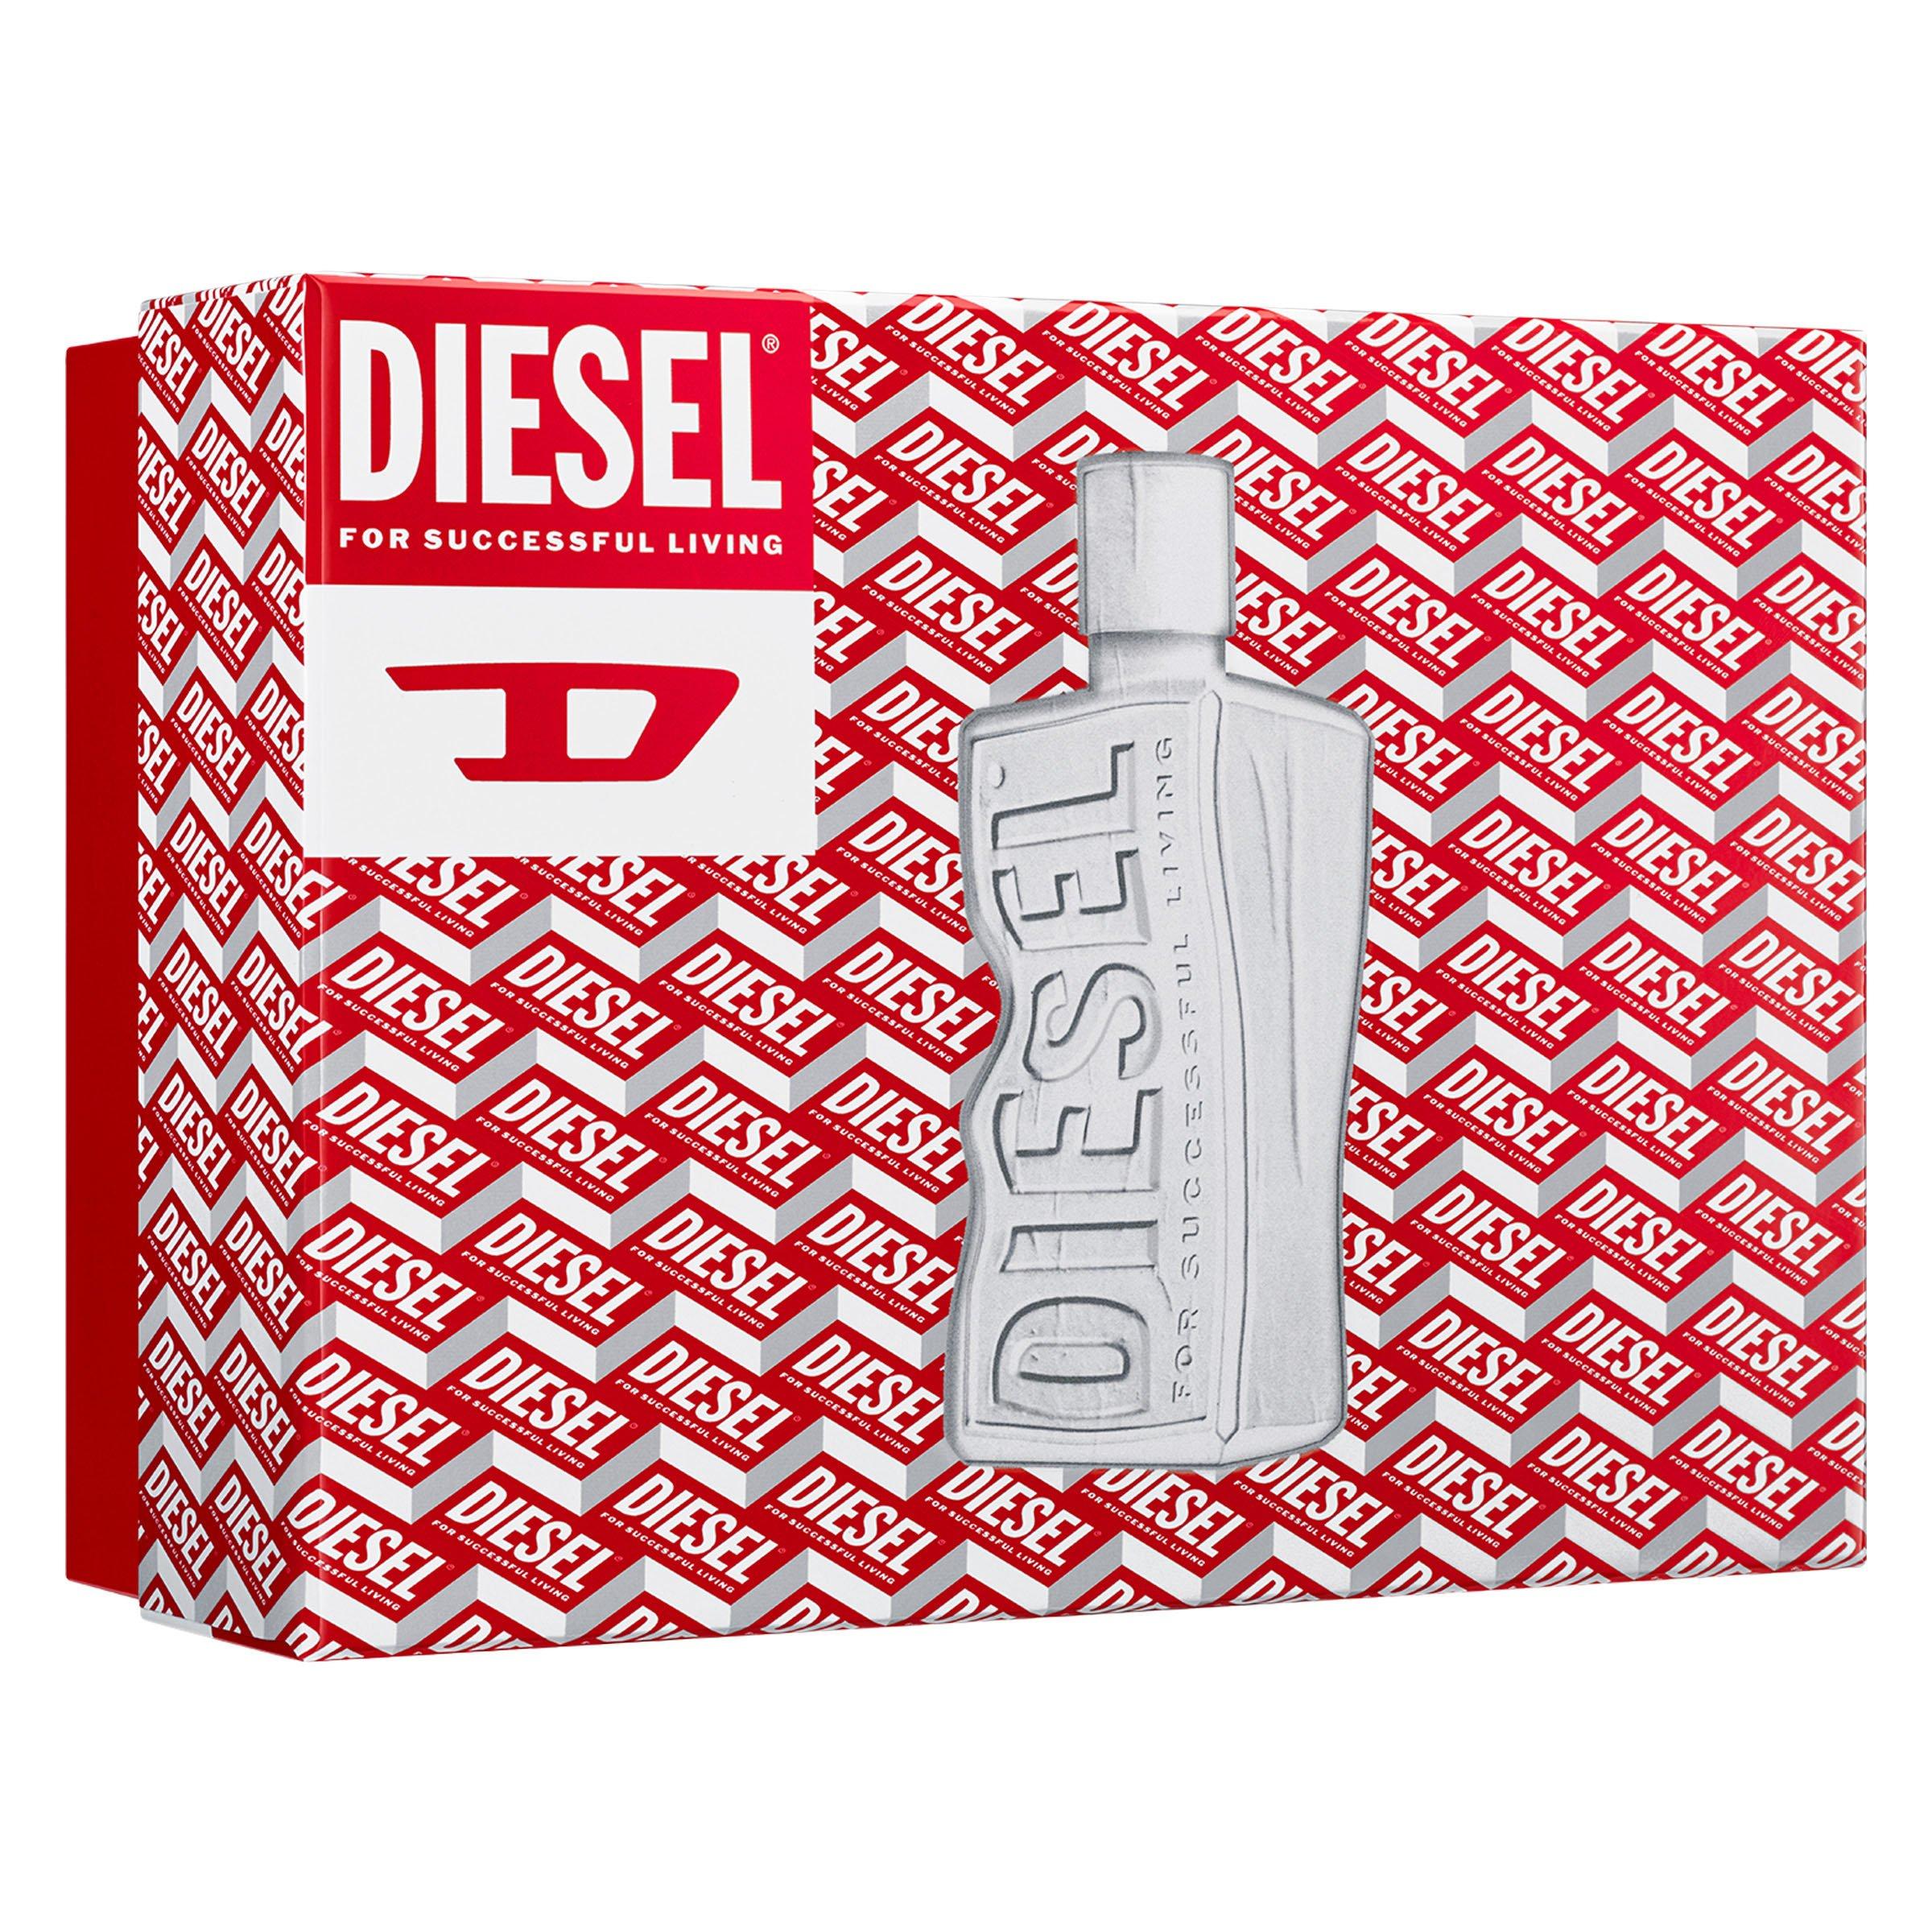 D by Diesel 100ml set (3120153)